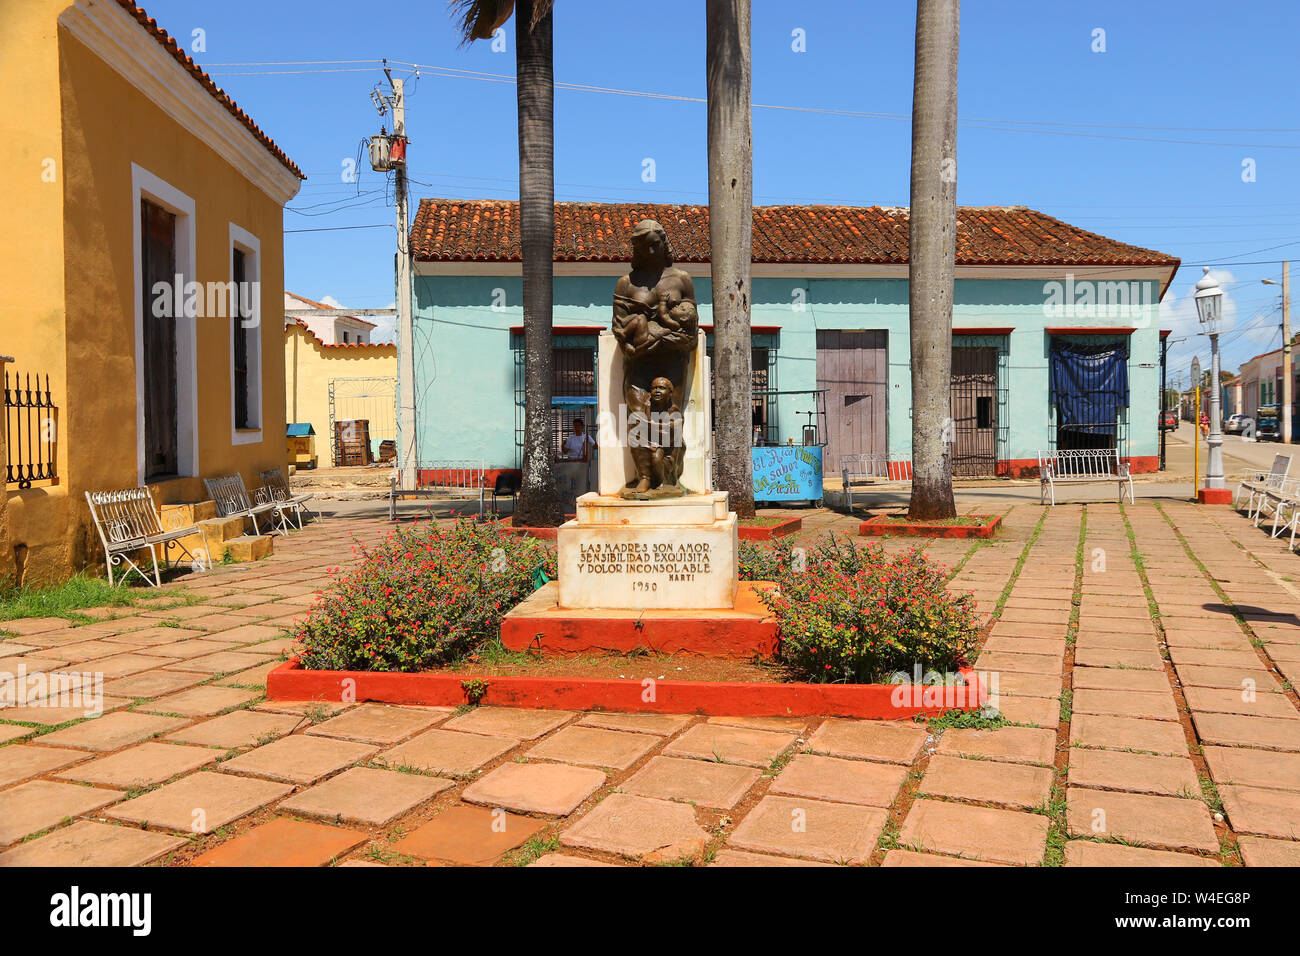 Remedios town center in Cuba Stock Photo